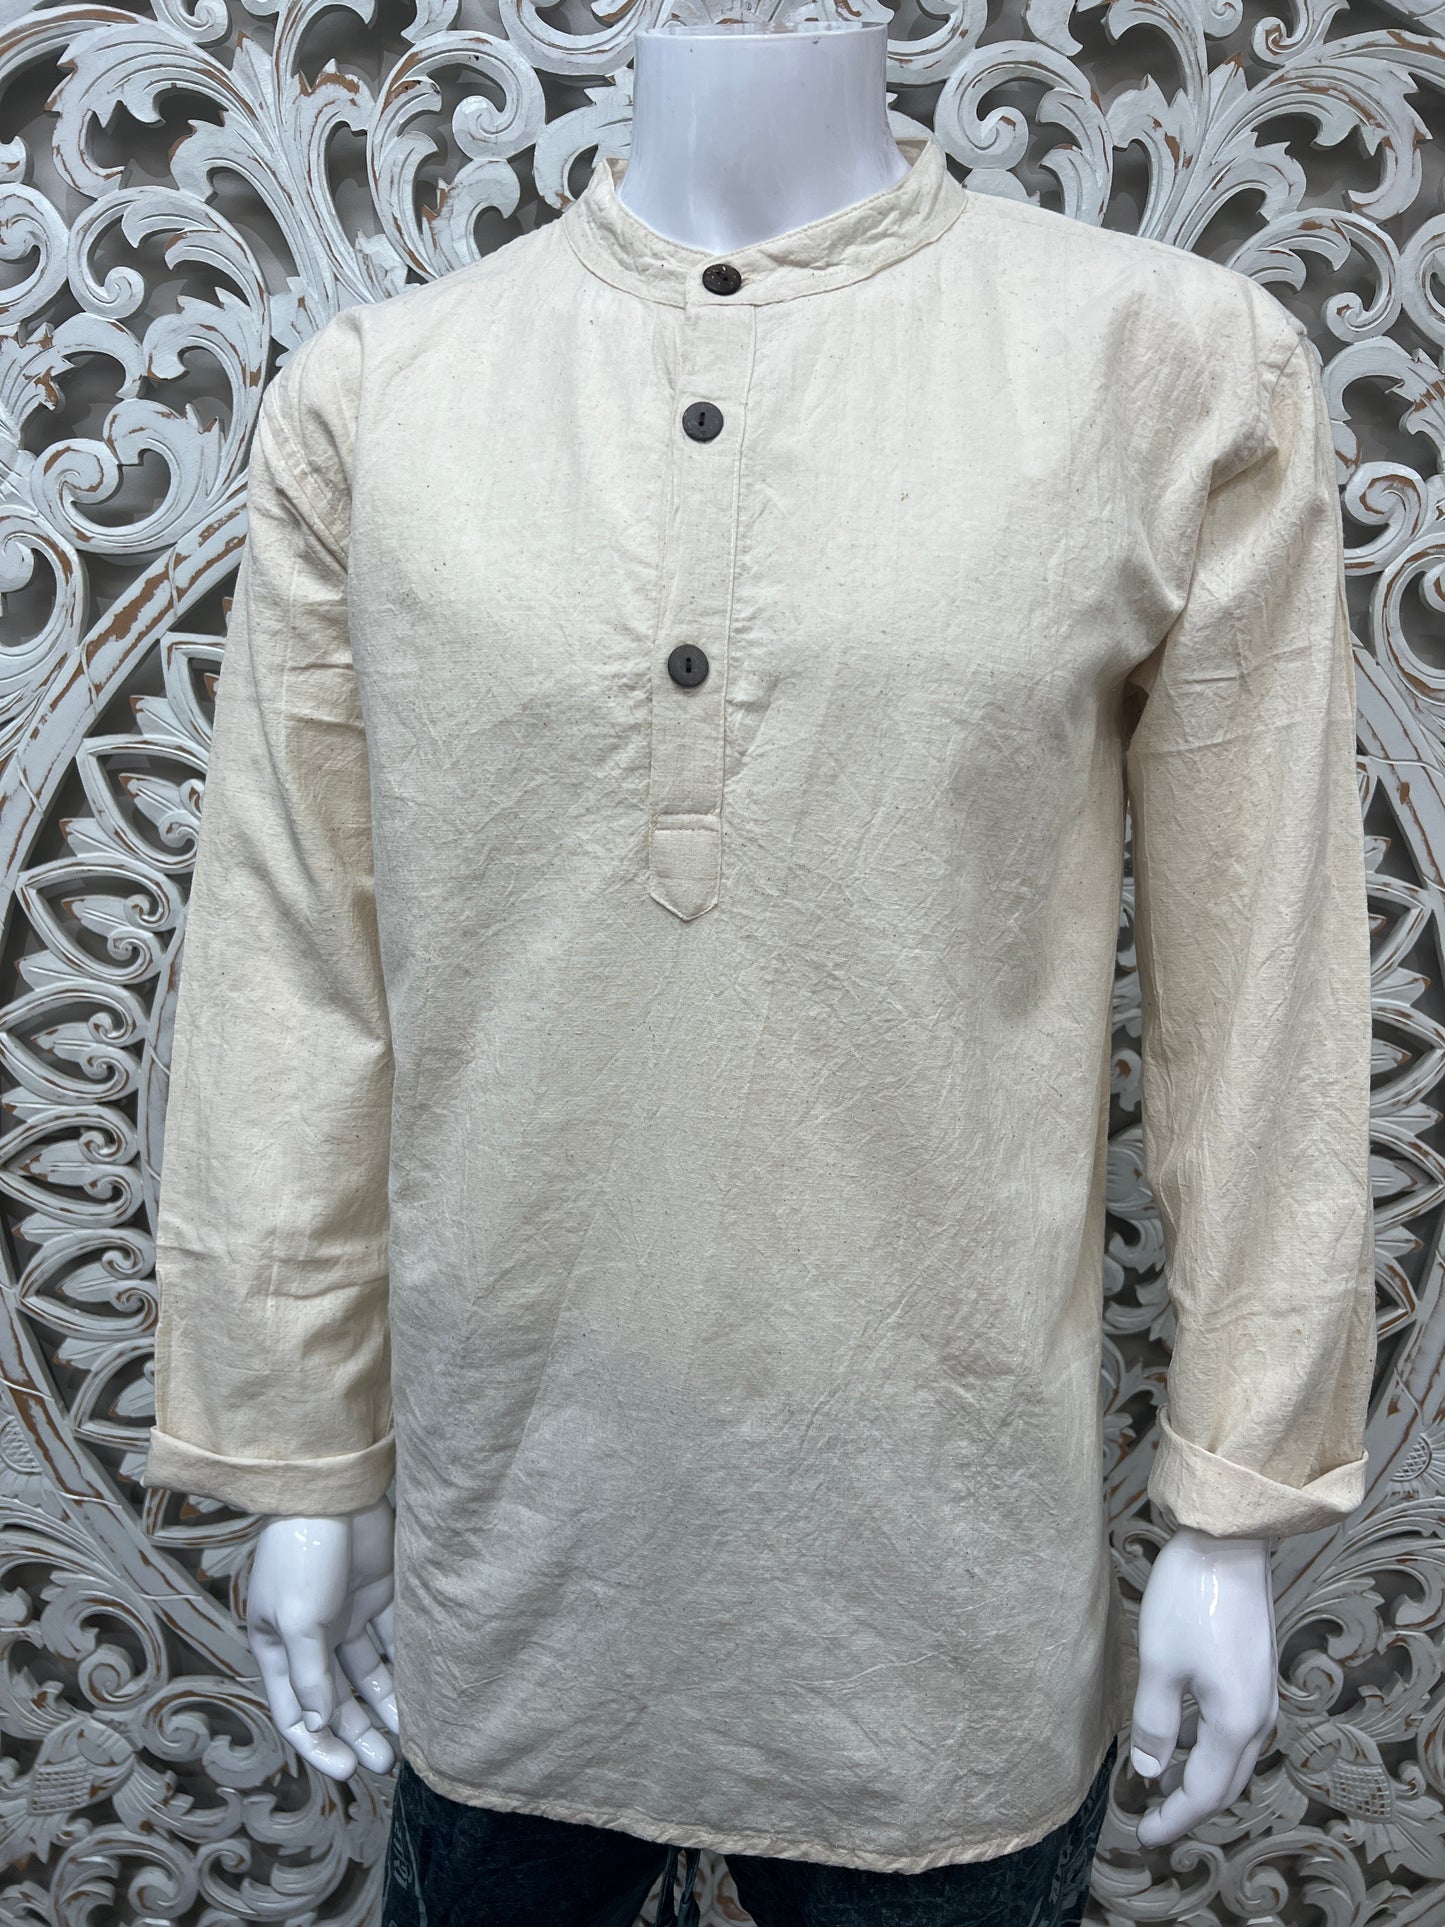 Hemp Cotton Blend Long Sleeve Shirts